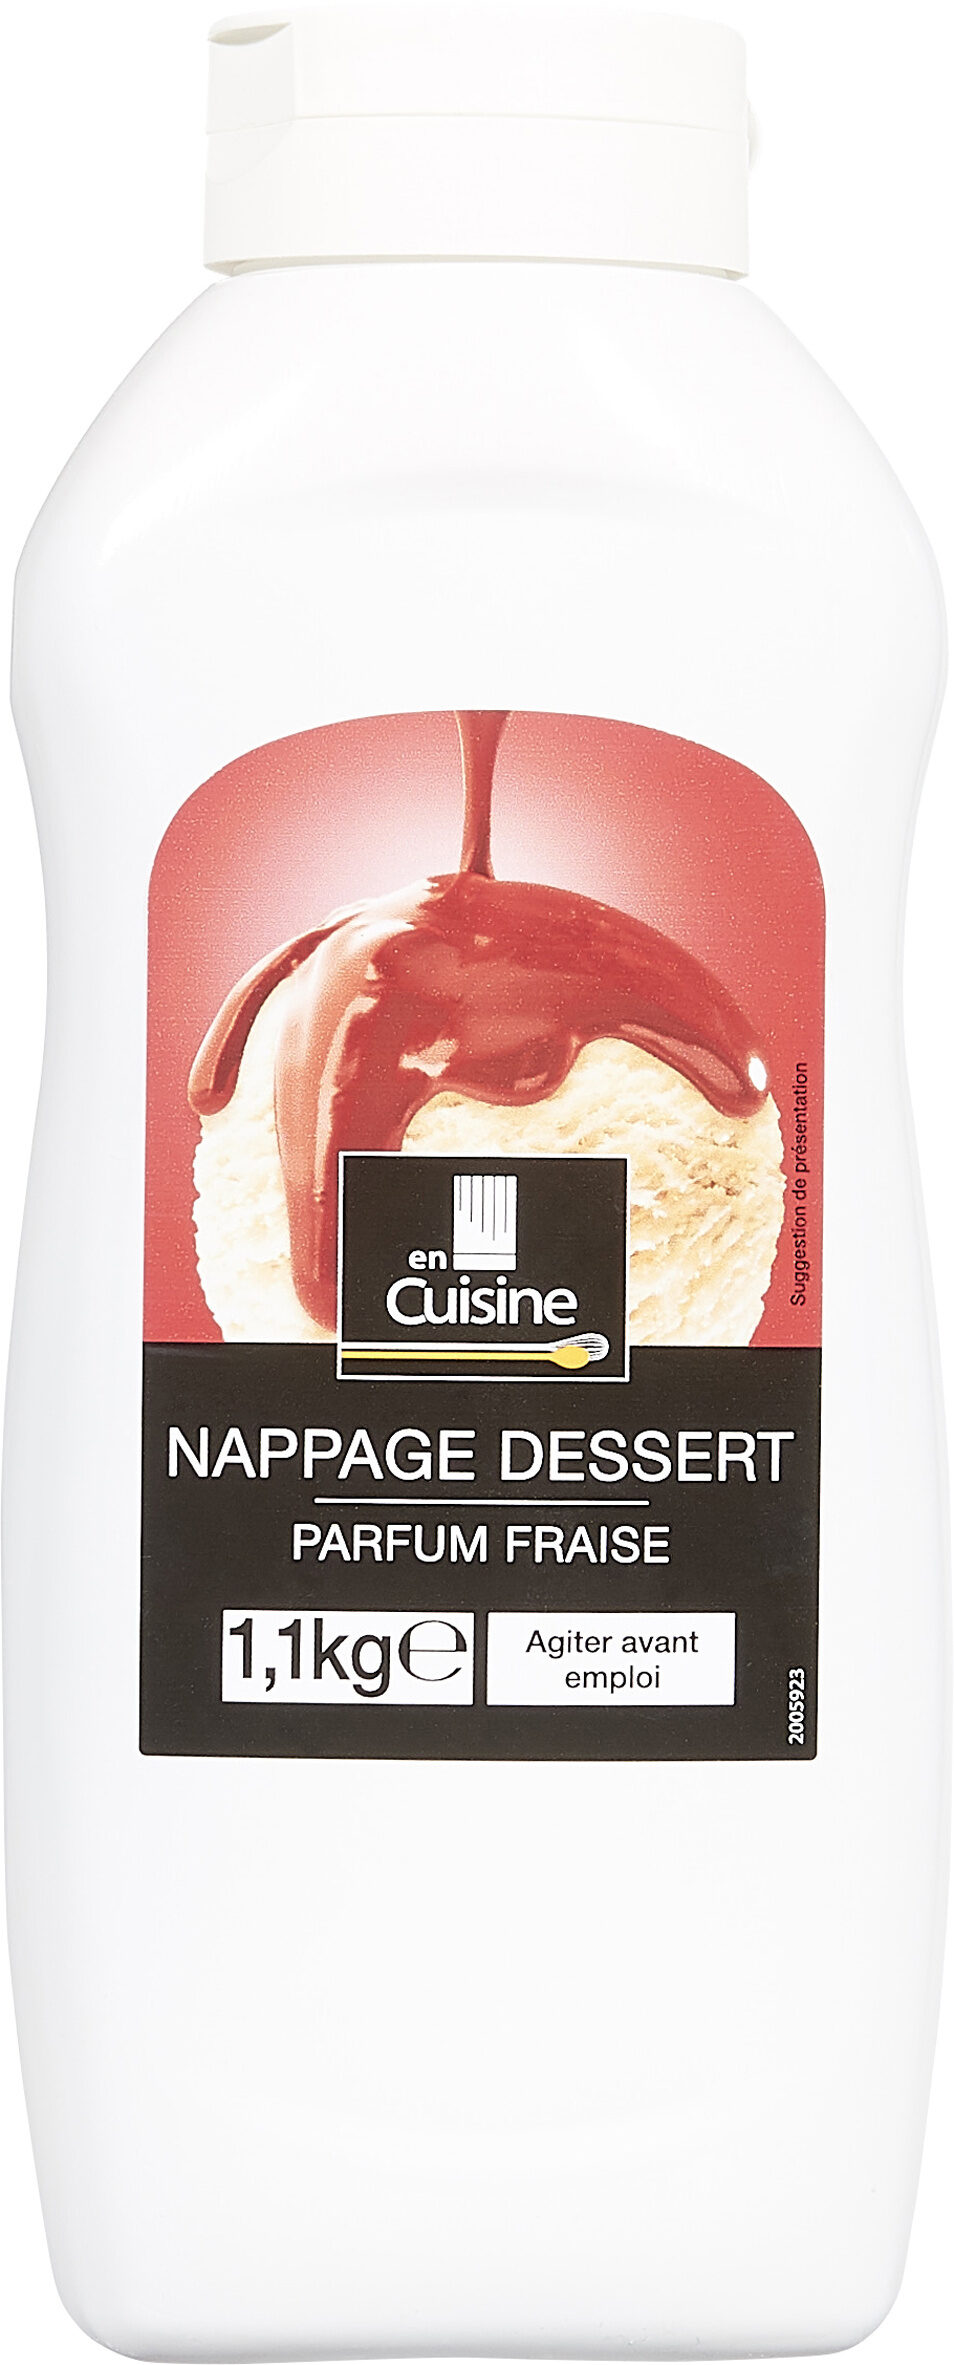 Nappage dessert parfum fraise - Produit